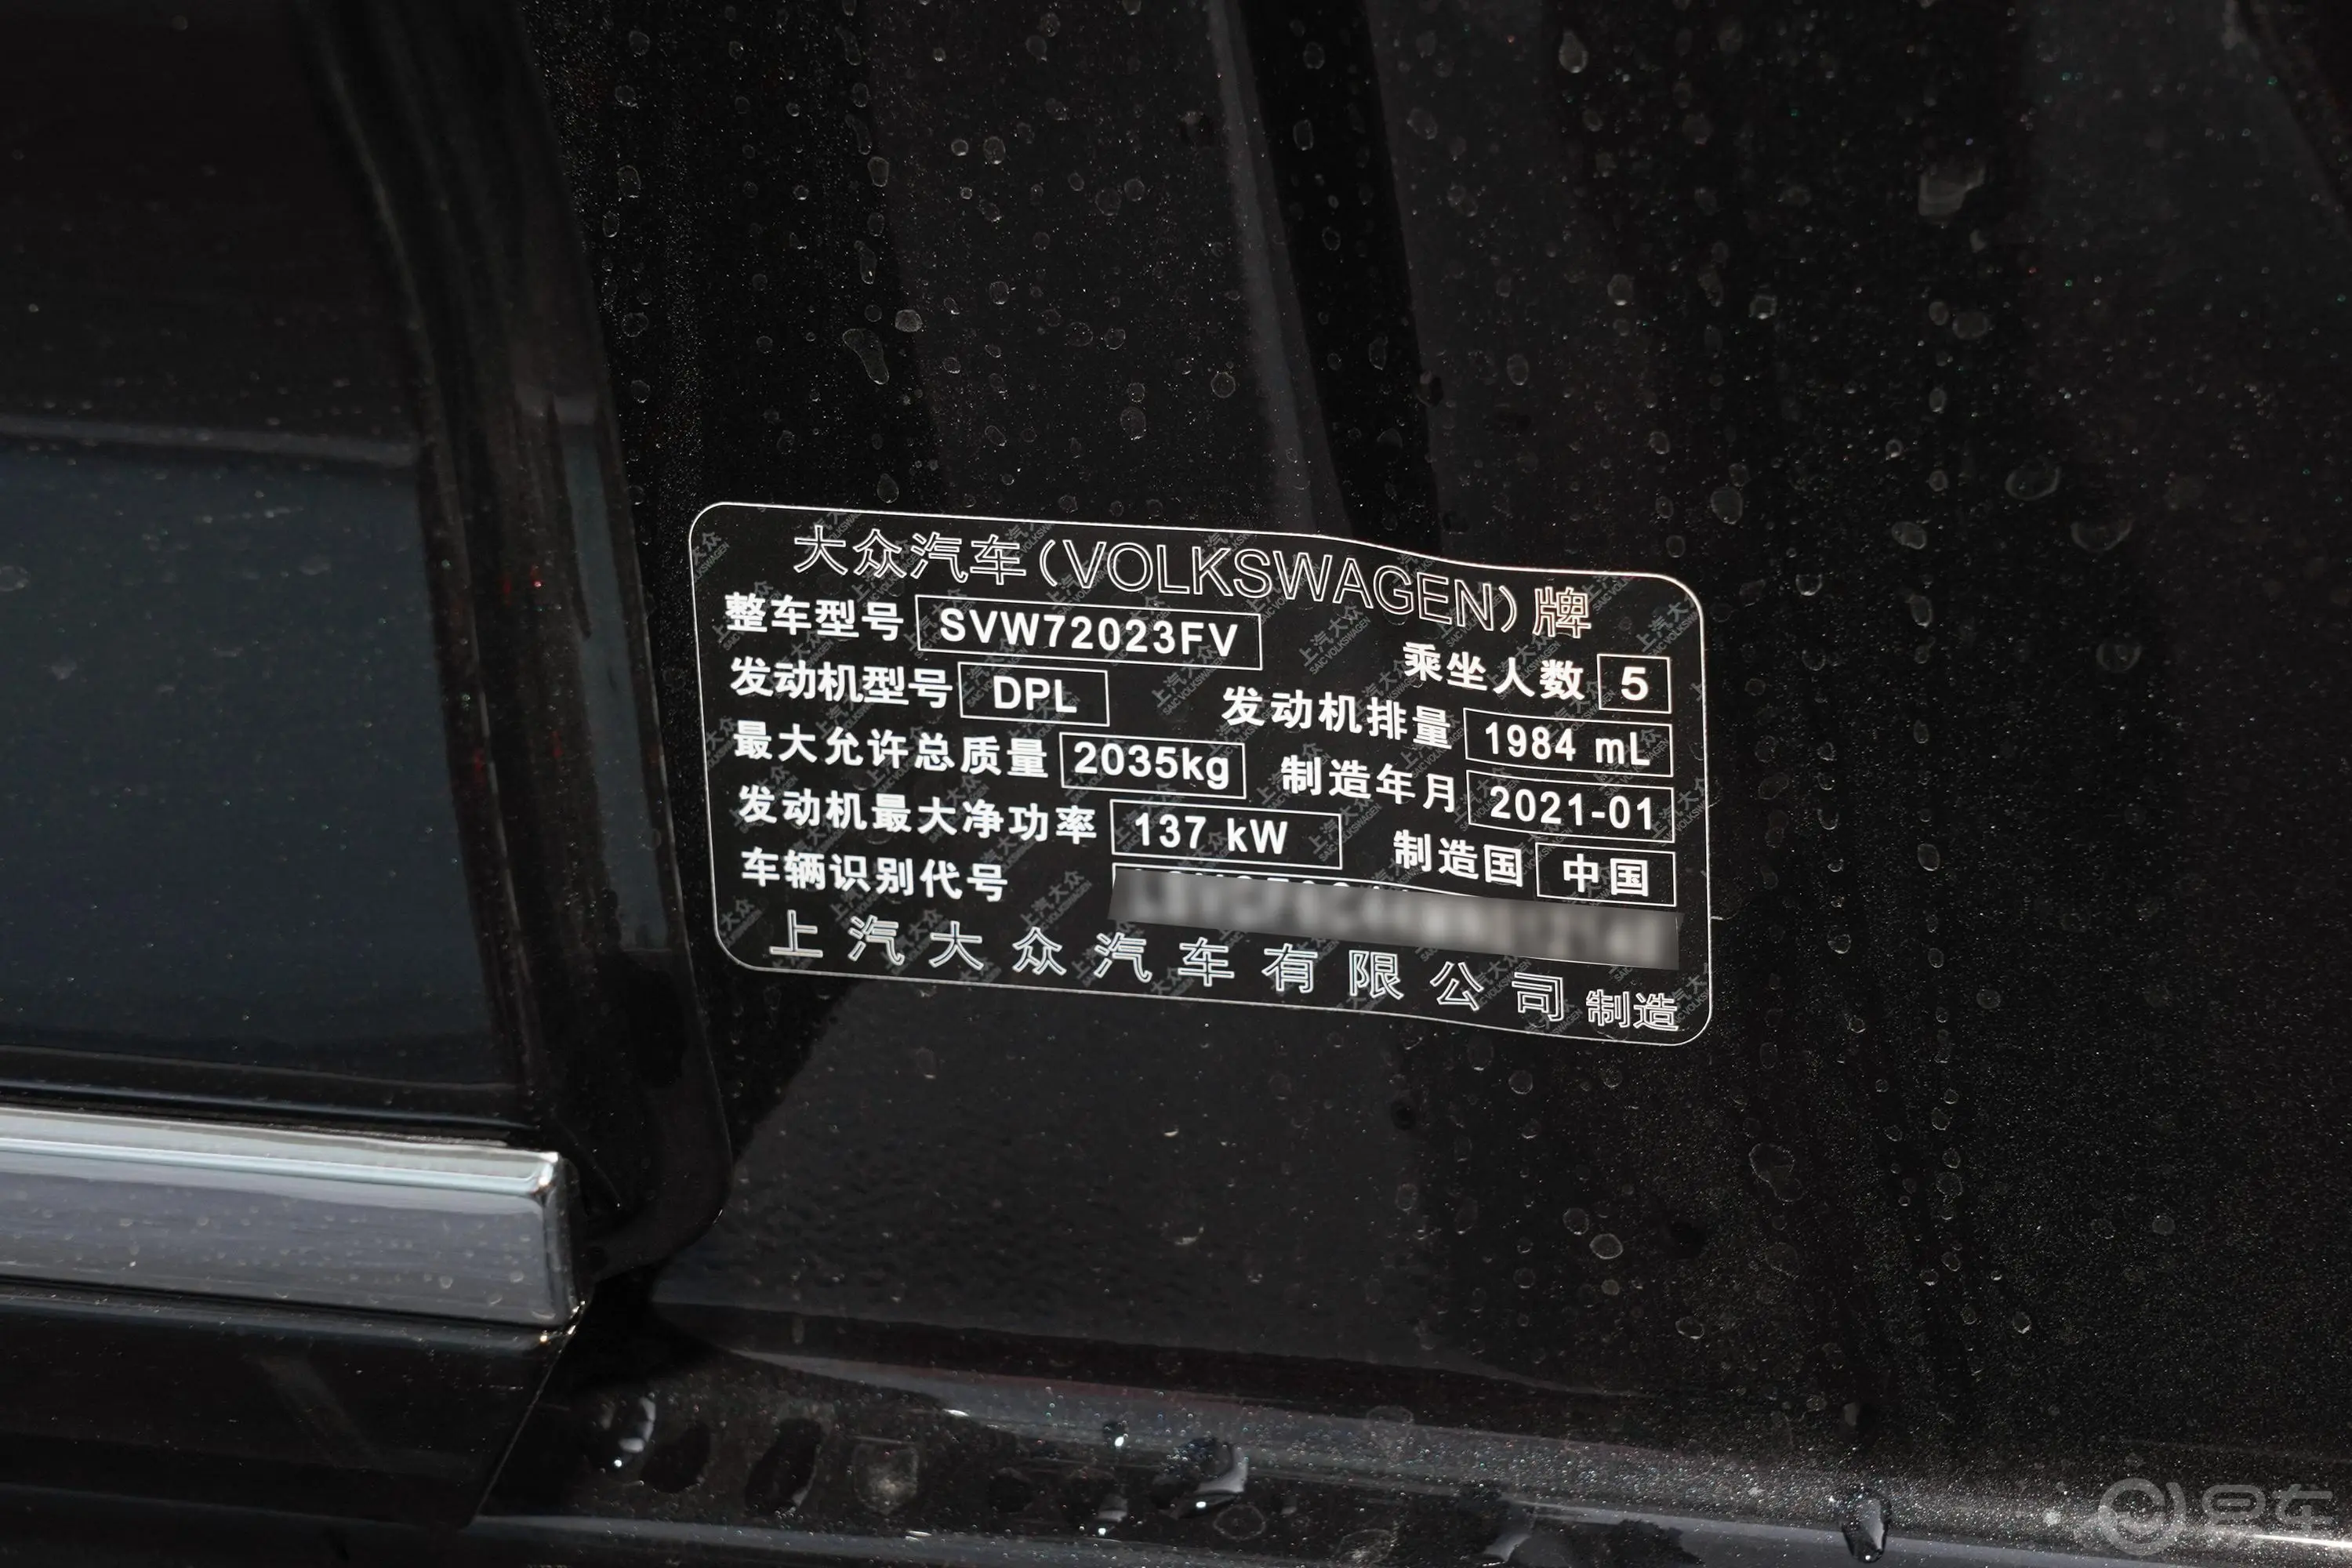 帕萨特330TSI 双离合 豪华版车辆信息铭牌